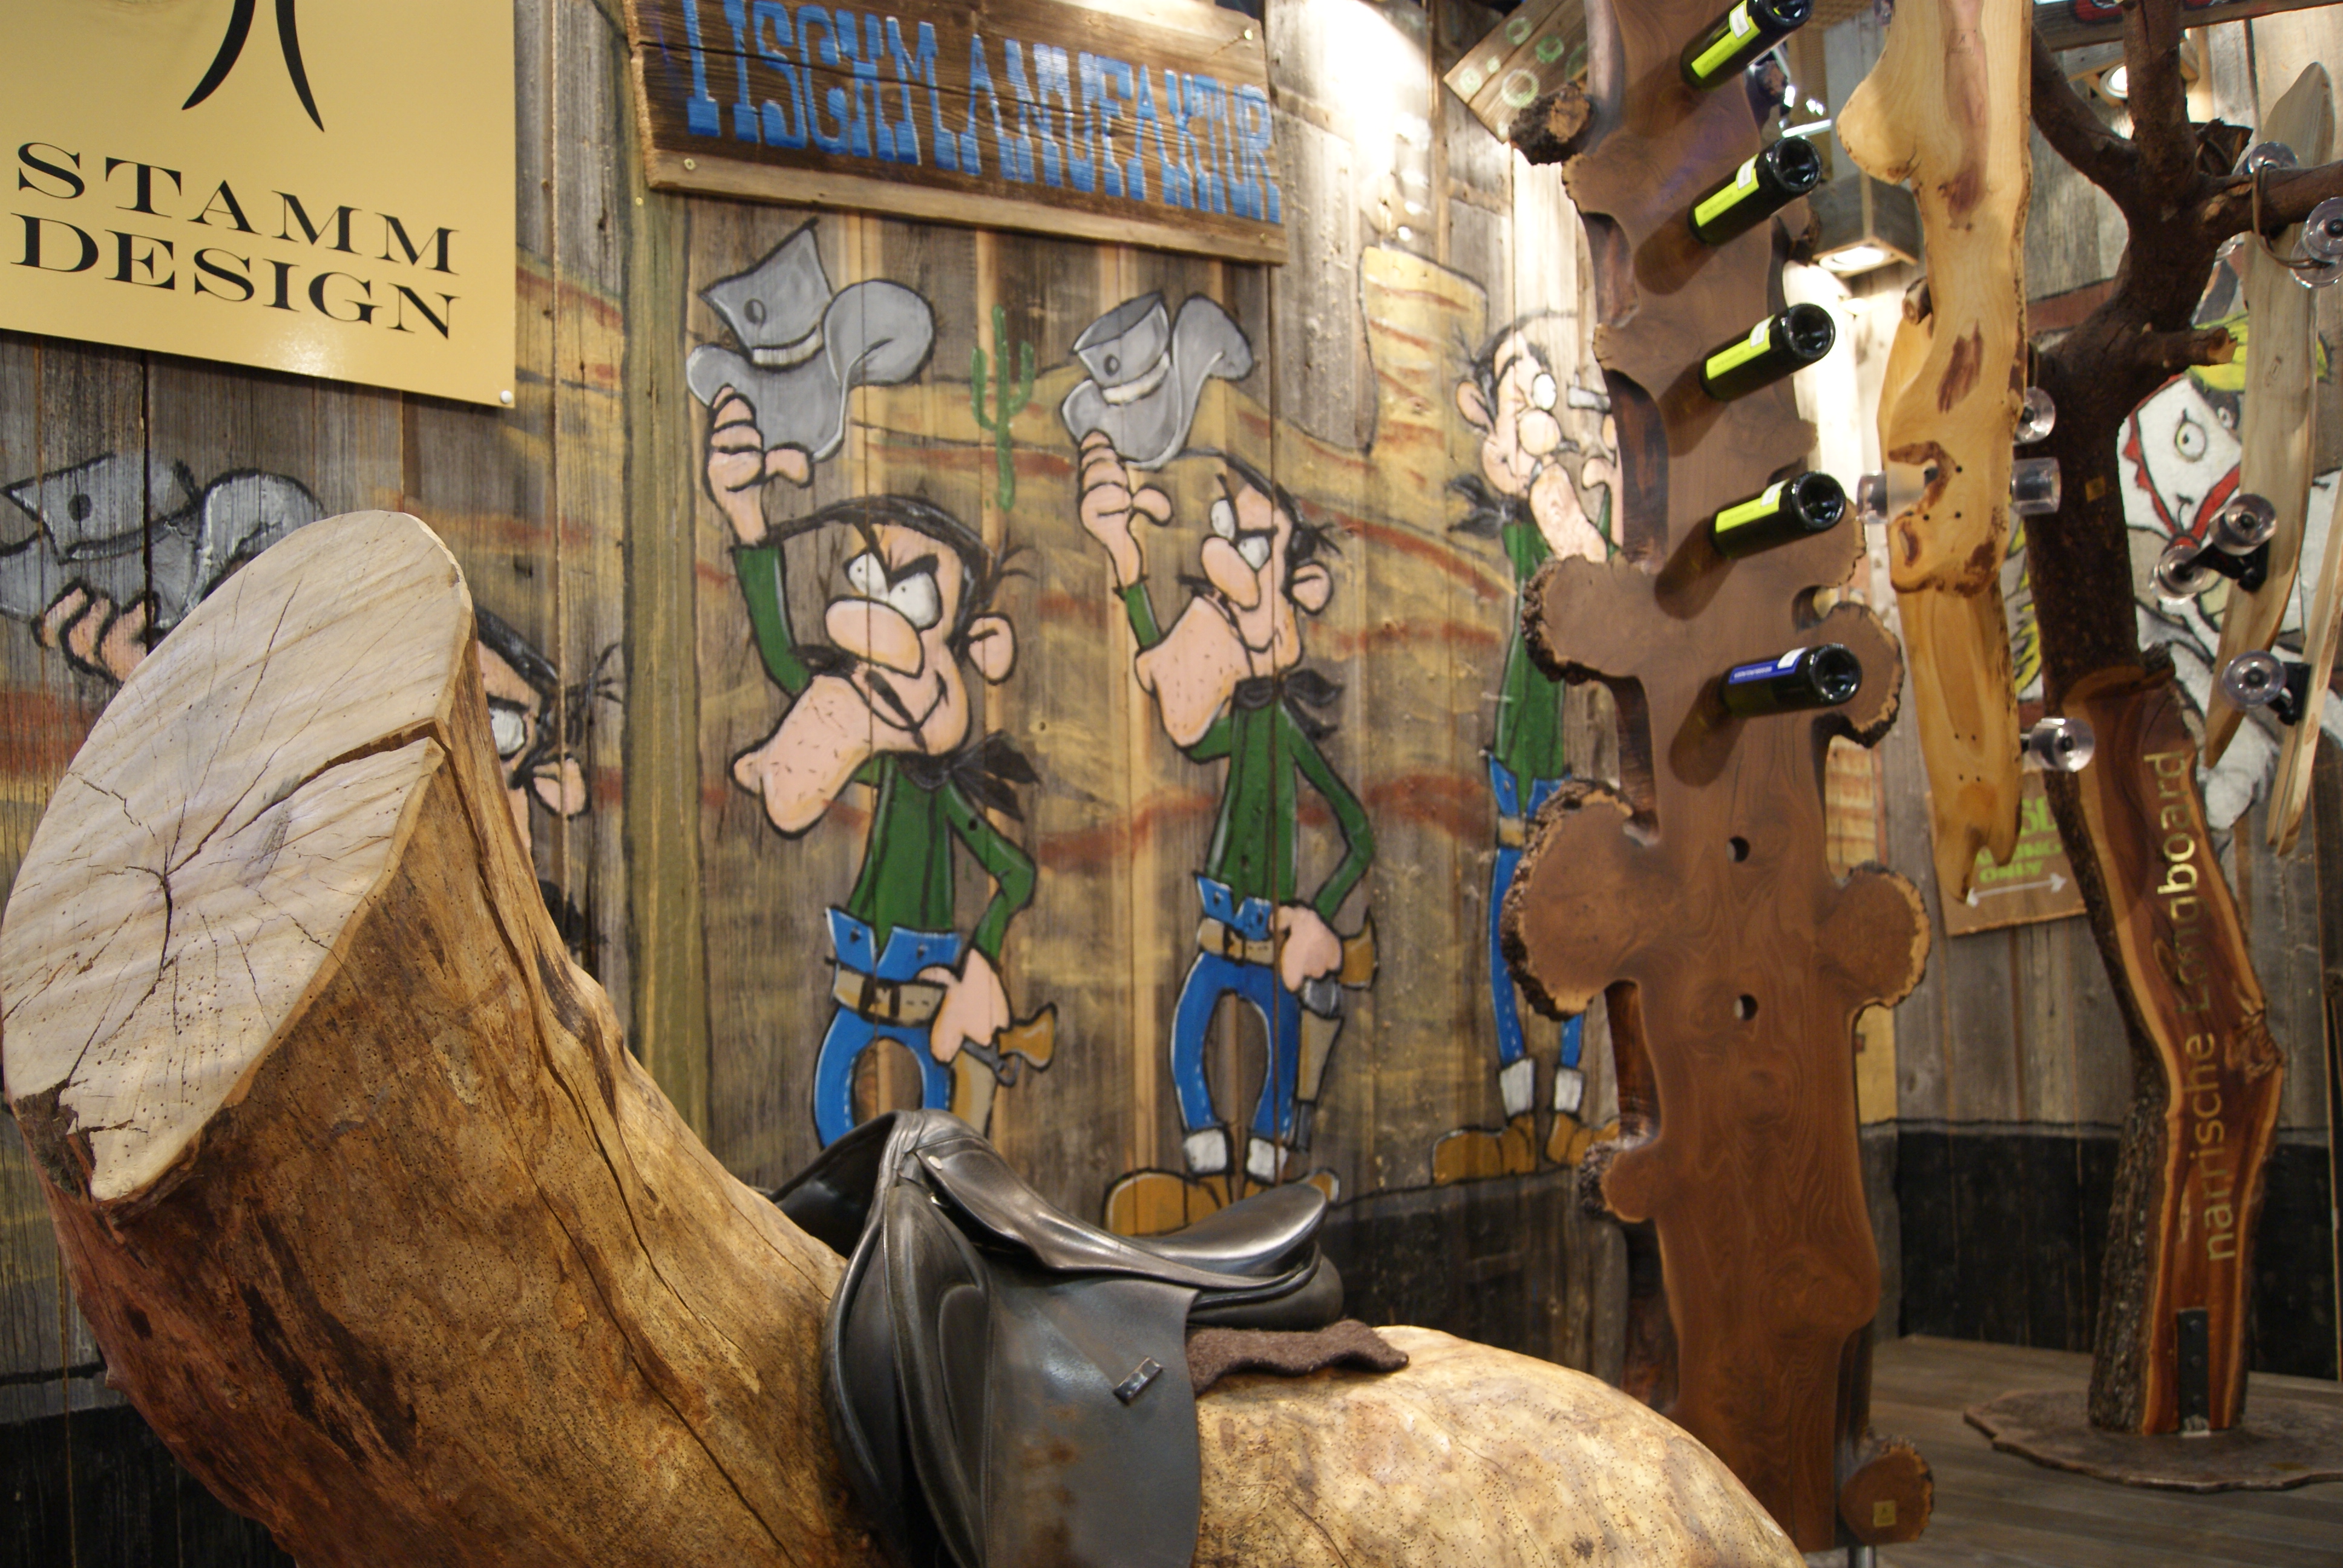 Wand mit Holzverkleidung von Stammdesign